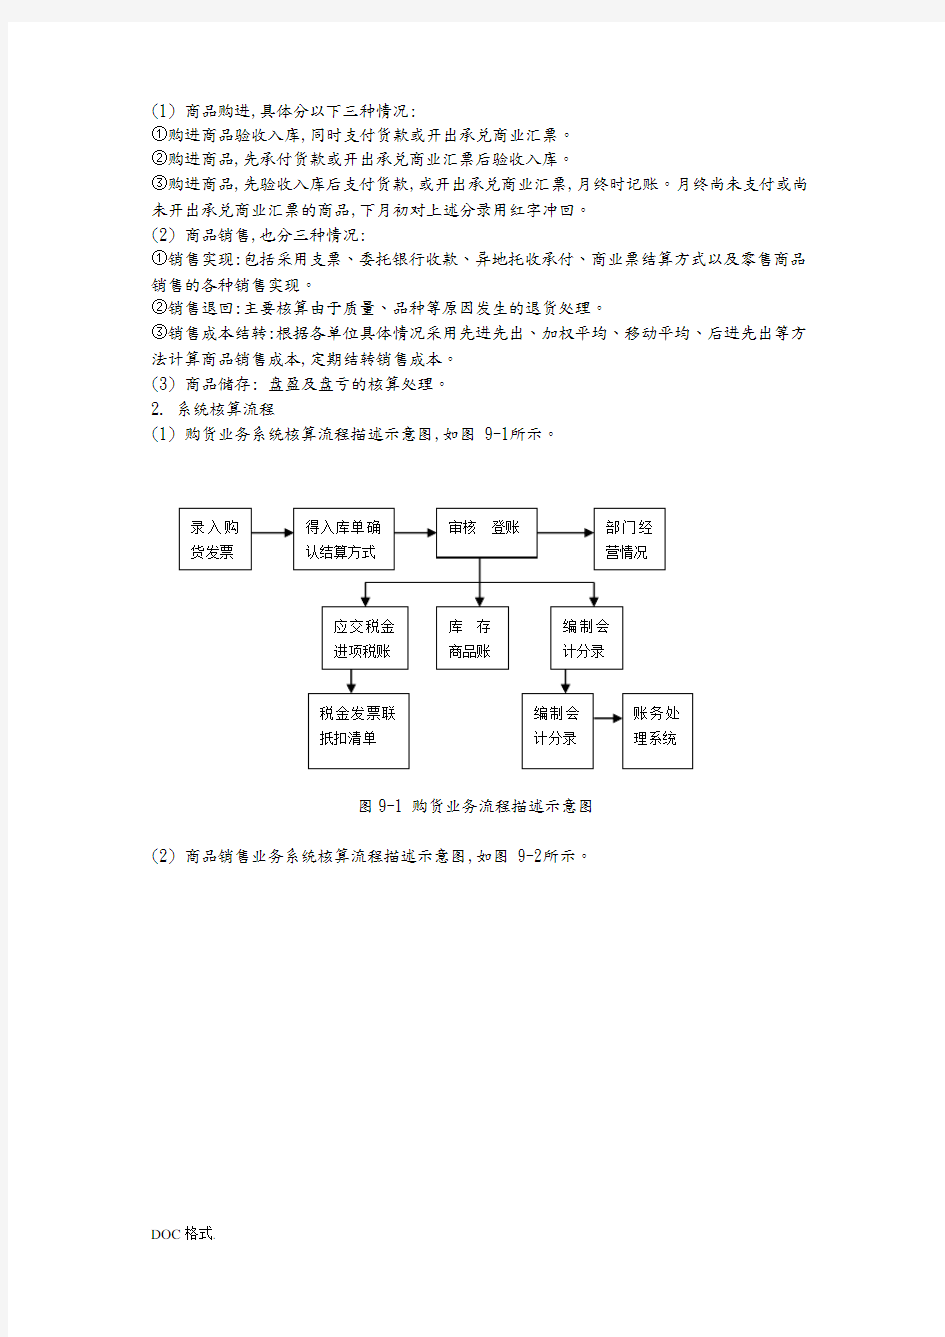 供应链管理系统构成与操作流程(带流程图)